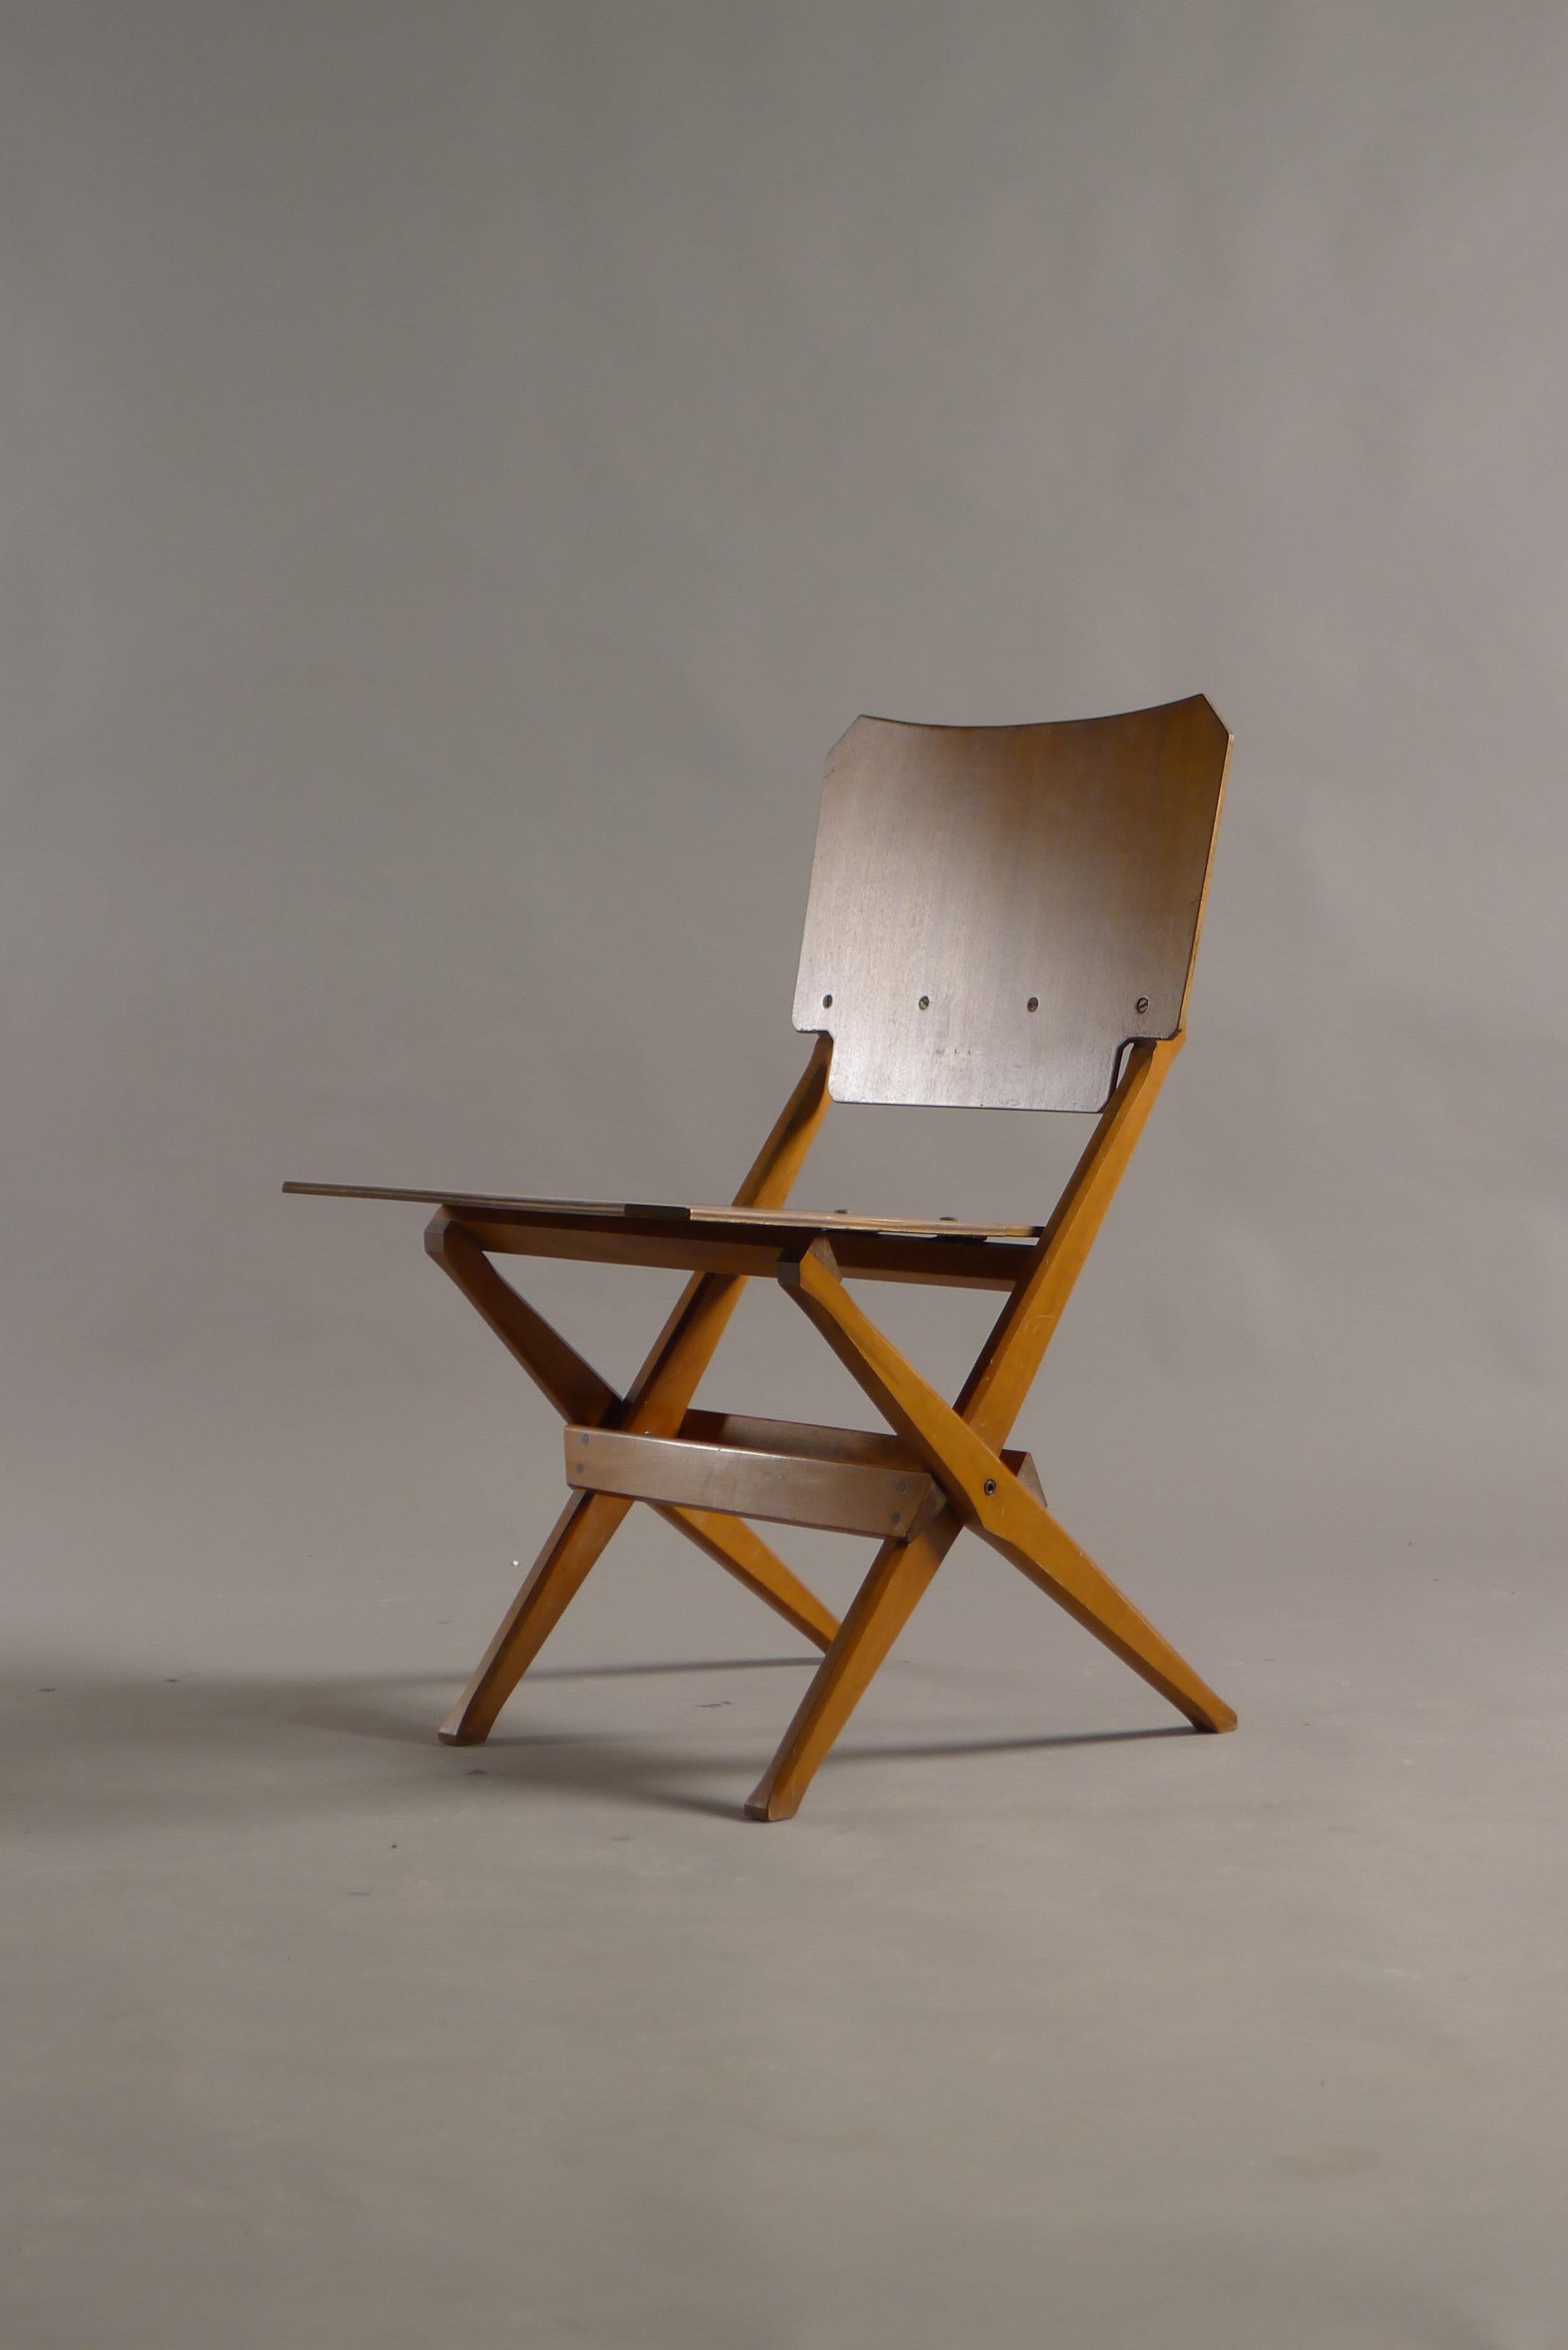 Franco Albini pour Poggi, Italie, datant d'environ 1950. Une chaise pliante en bois dans un état vintage entièrement d'origine et intact. 

Le mécanisme fonctionne parfaitement. 

Une chaise au design exceptionnel et rarement vue.